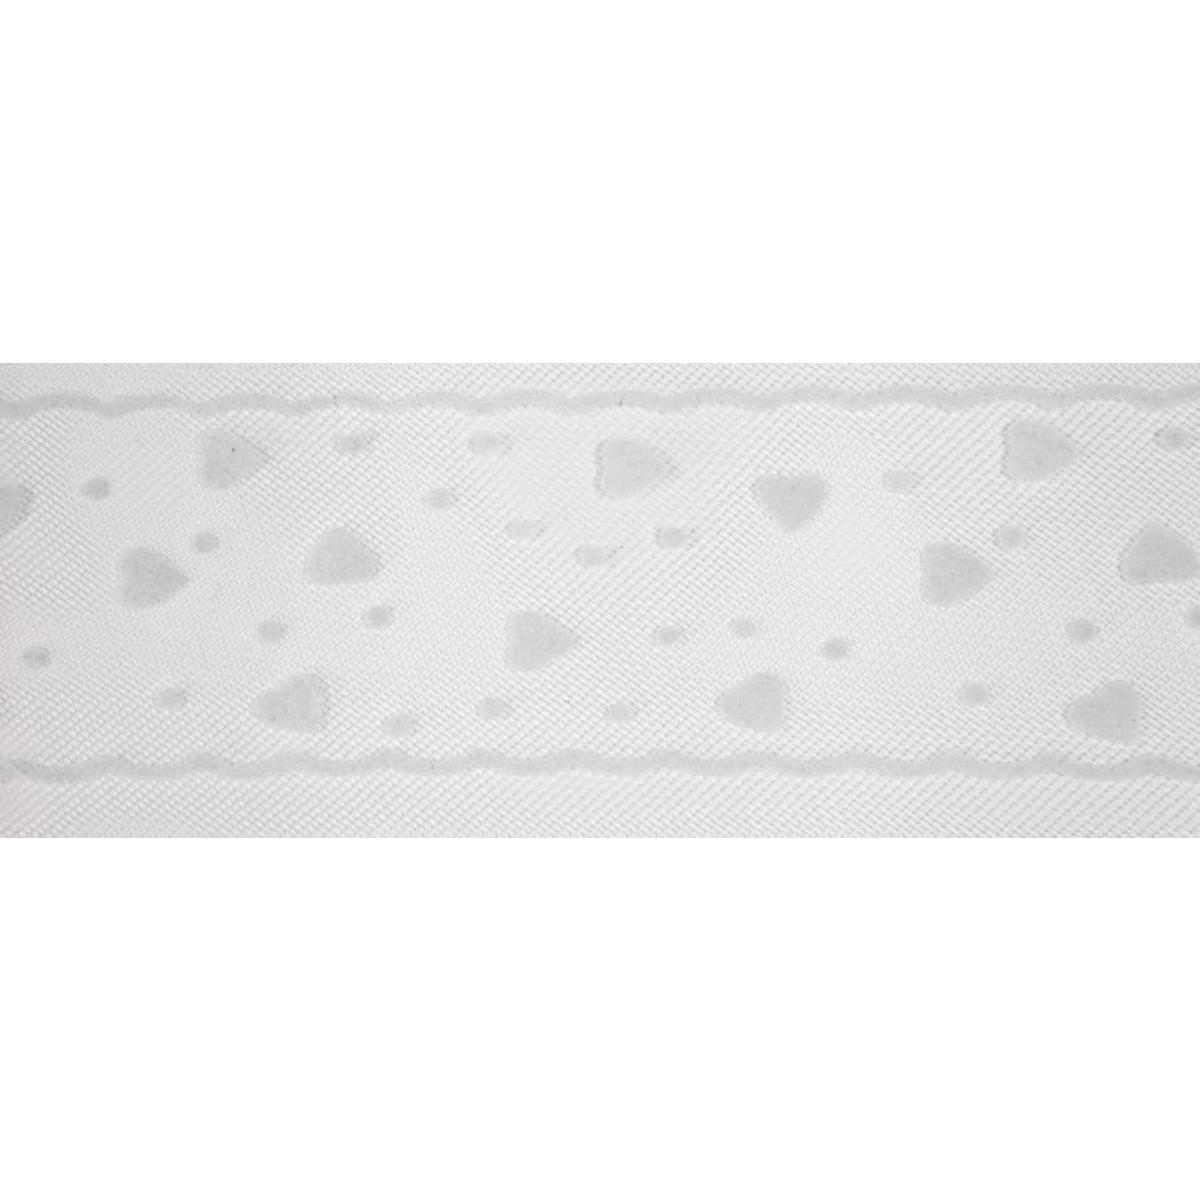 Rouleau décoratif Cœurs - Tulle - 8 cm x 20 m - Blanc